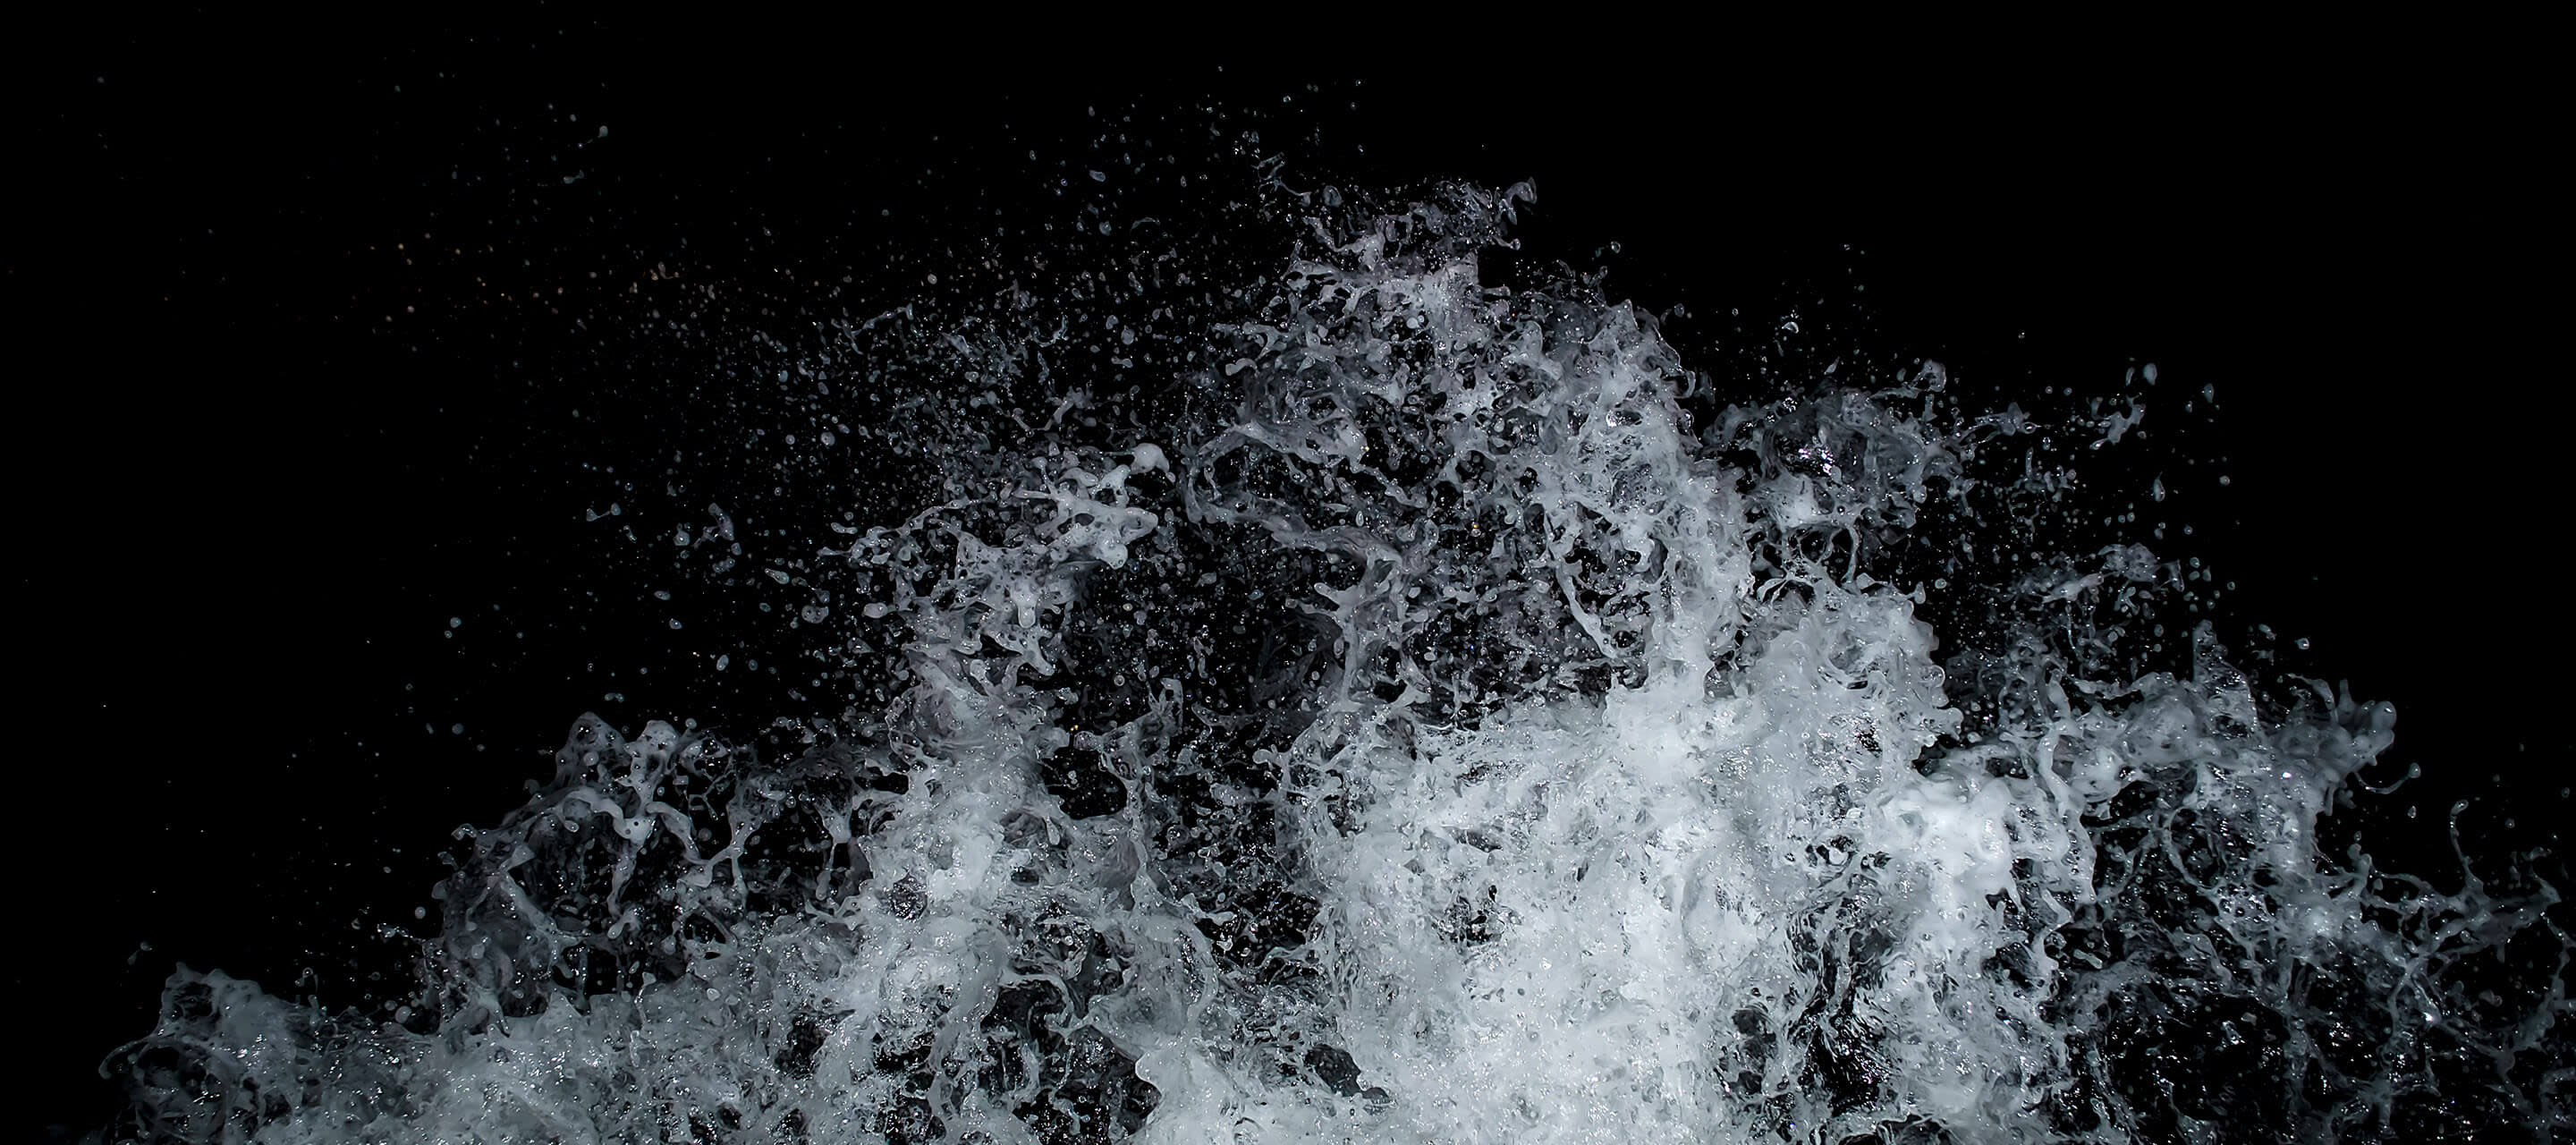 image shows wave splashing against black background 